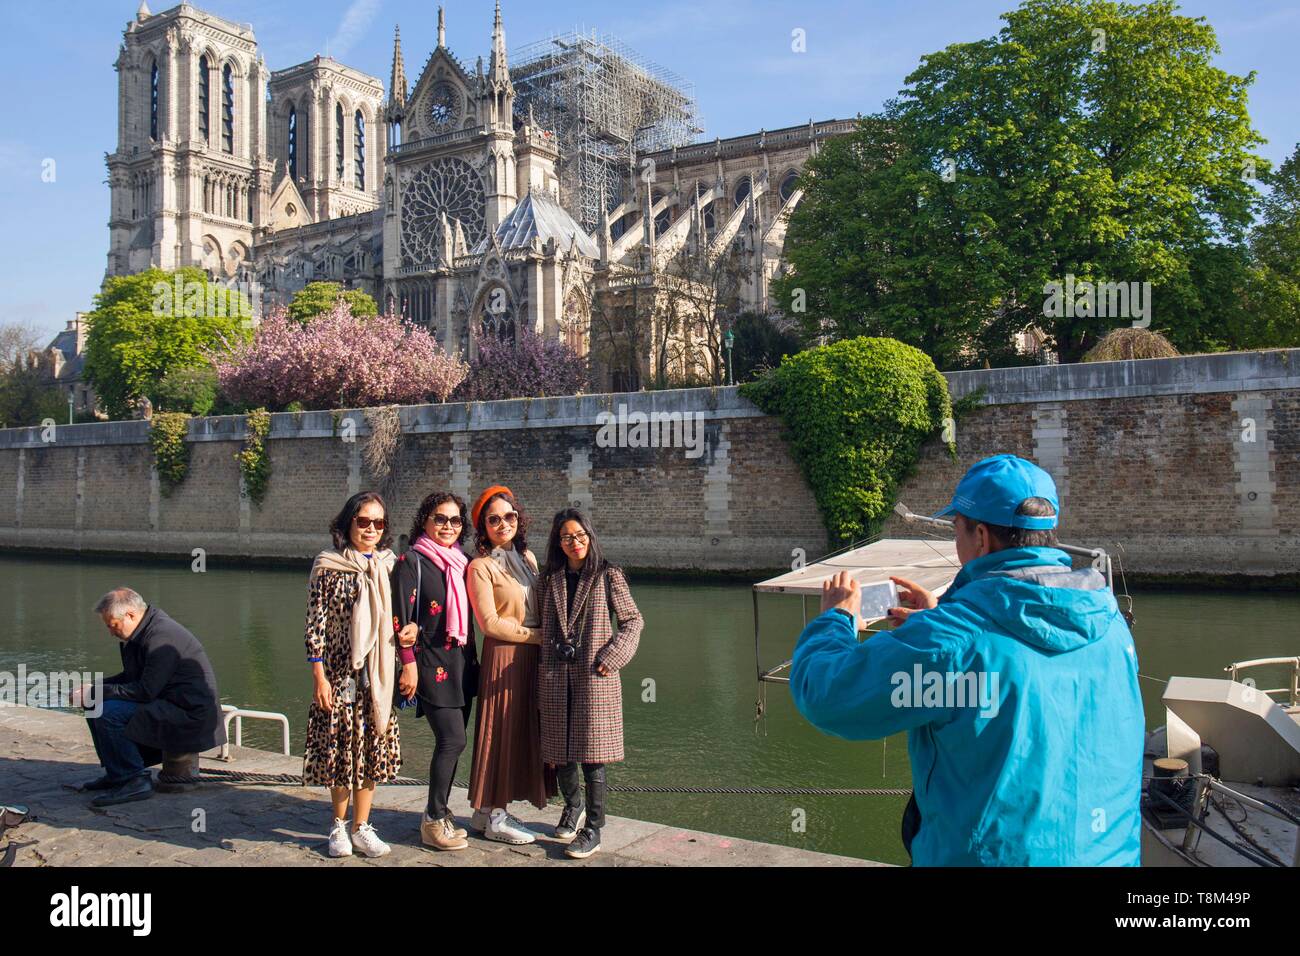 France, Paris, Notre Dame de Paris, deux jours après l'incendie, le 17 avril 2019, les touristes asiatiques se faire photographier devant la cathédrale du quai de Montebello Banque D'Images